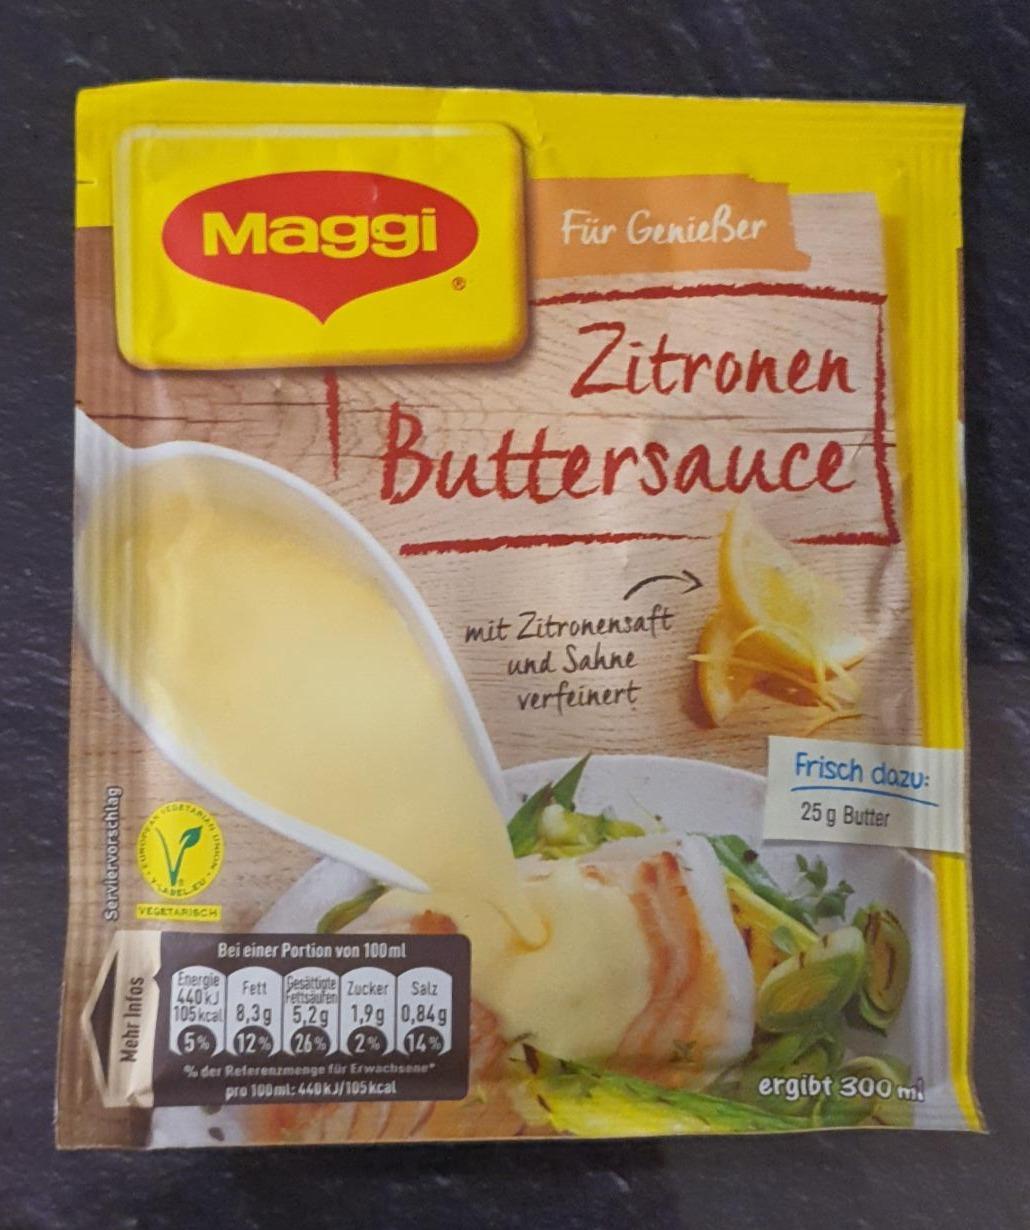 Fotografie - Für Genießer Zitronen Buttersauce Maggi